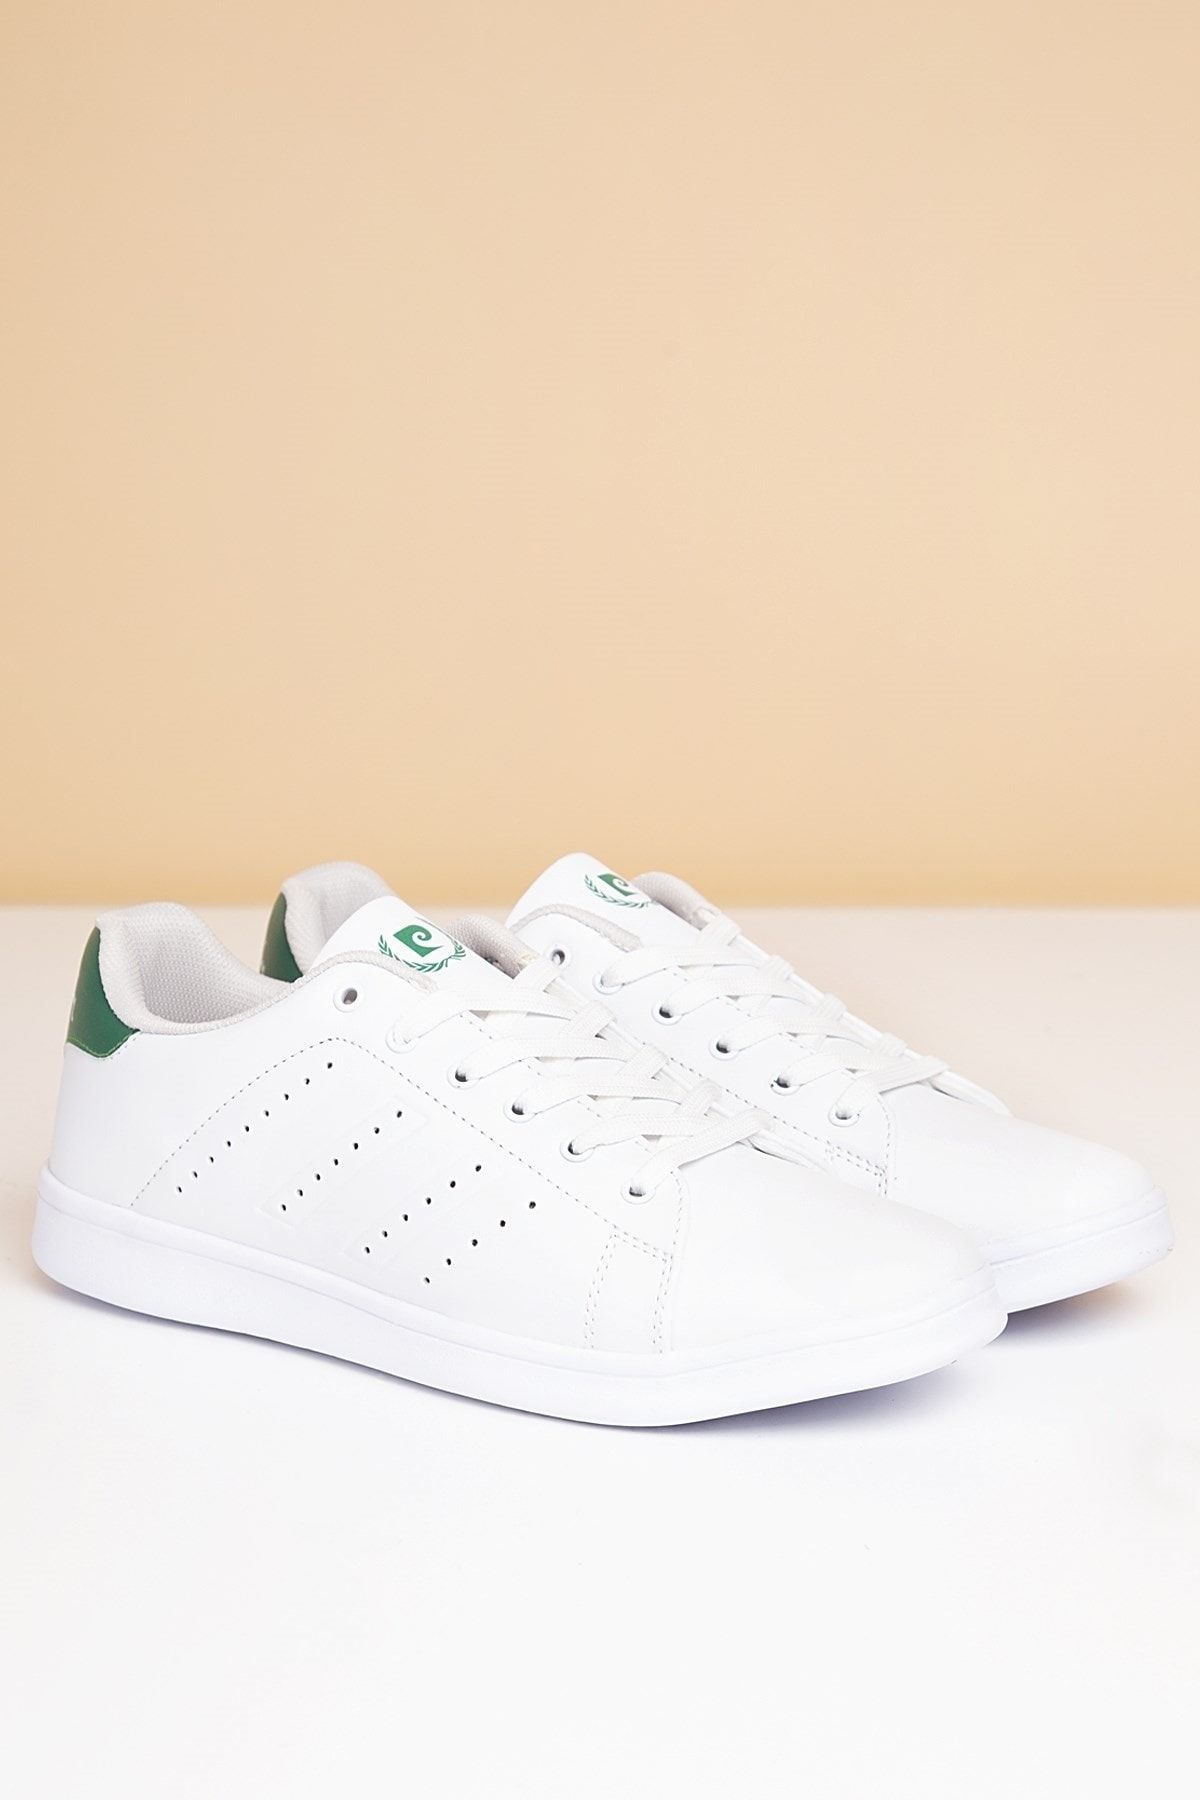 Pierre Cardin Erkek Günlük Spor Ayakkabı Beyaz Yeşil Pcs-10152